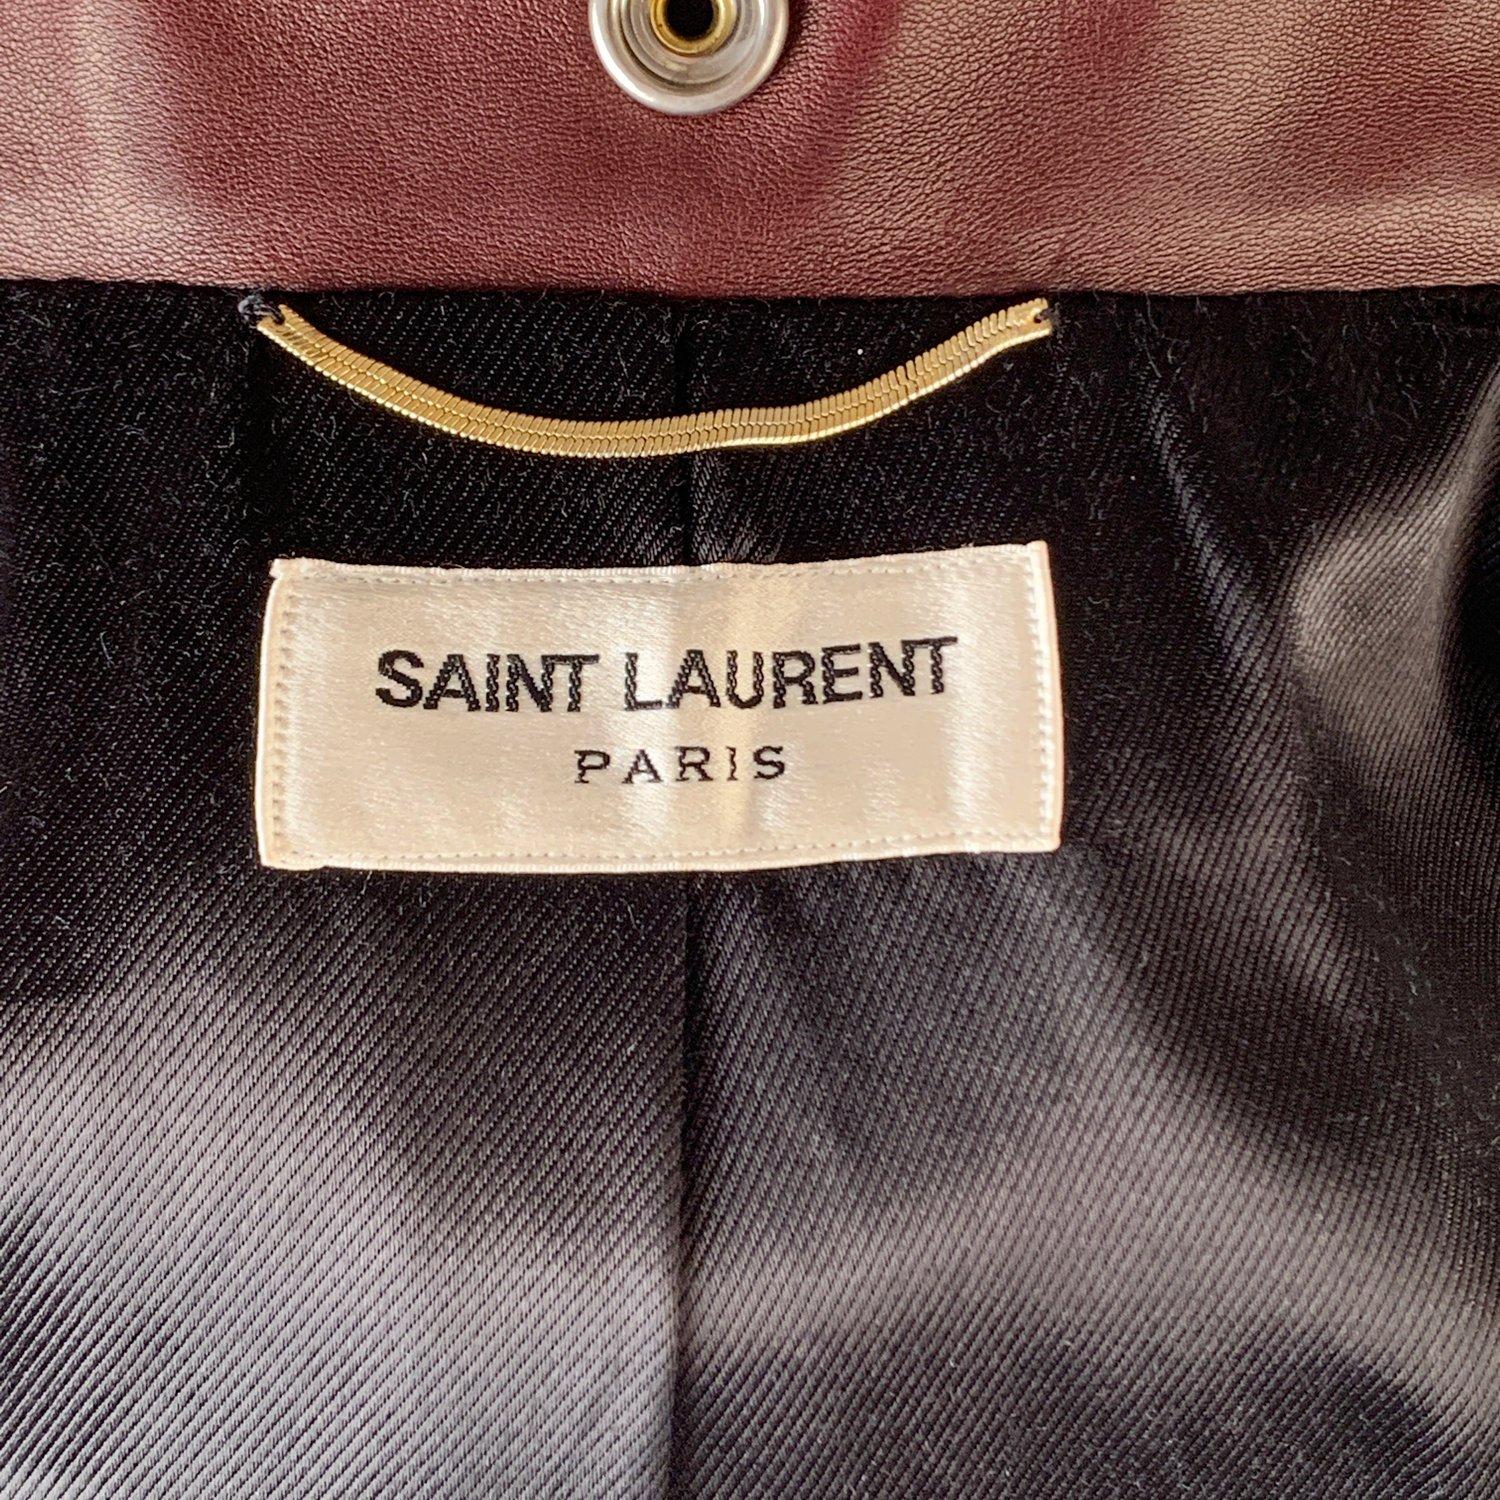 Women's Yves Saint Laurent Saint Laurent Brown Leather Biker Women Jacket Size 36